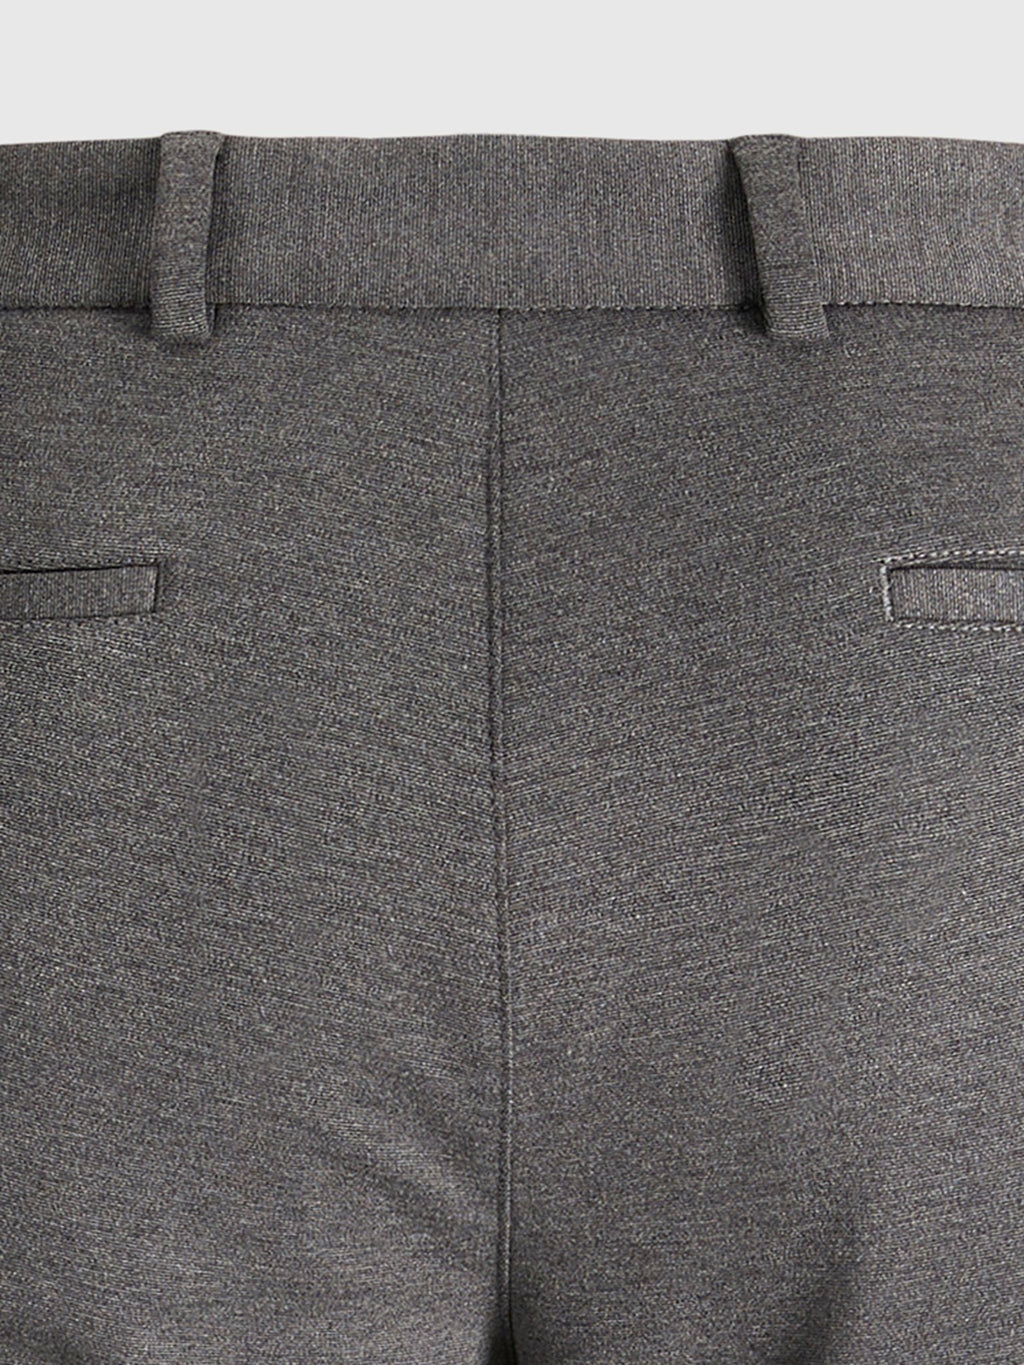 原始性能裤子 - 深灰色